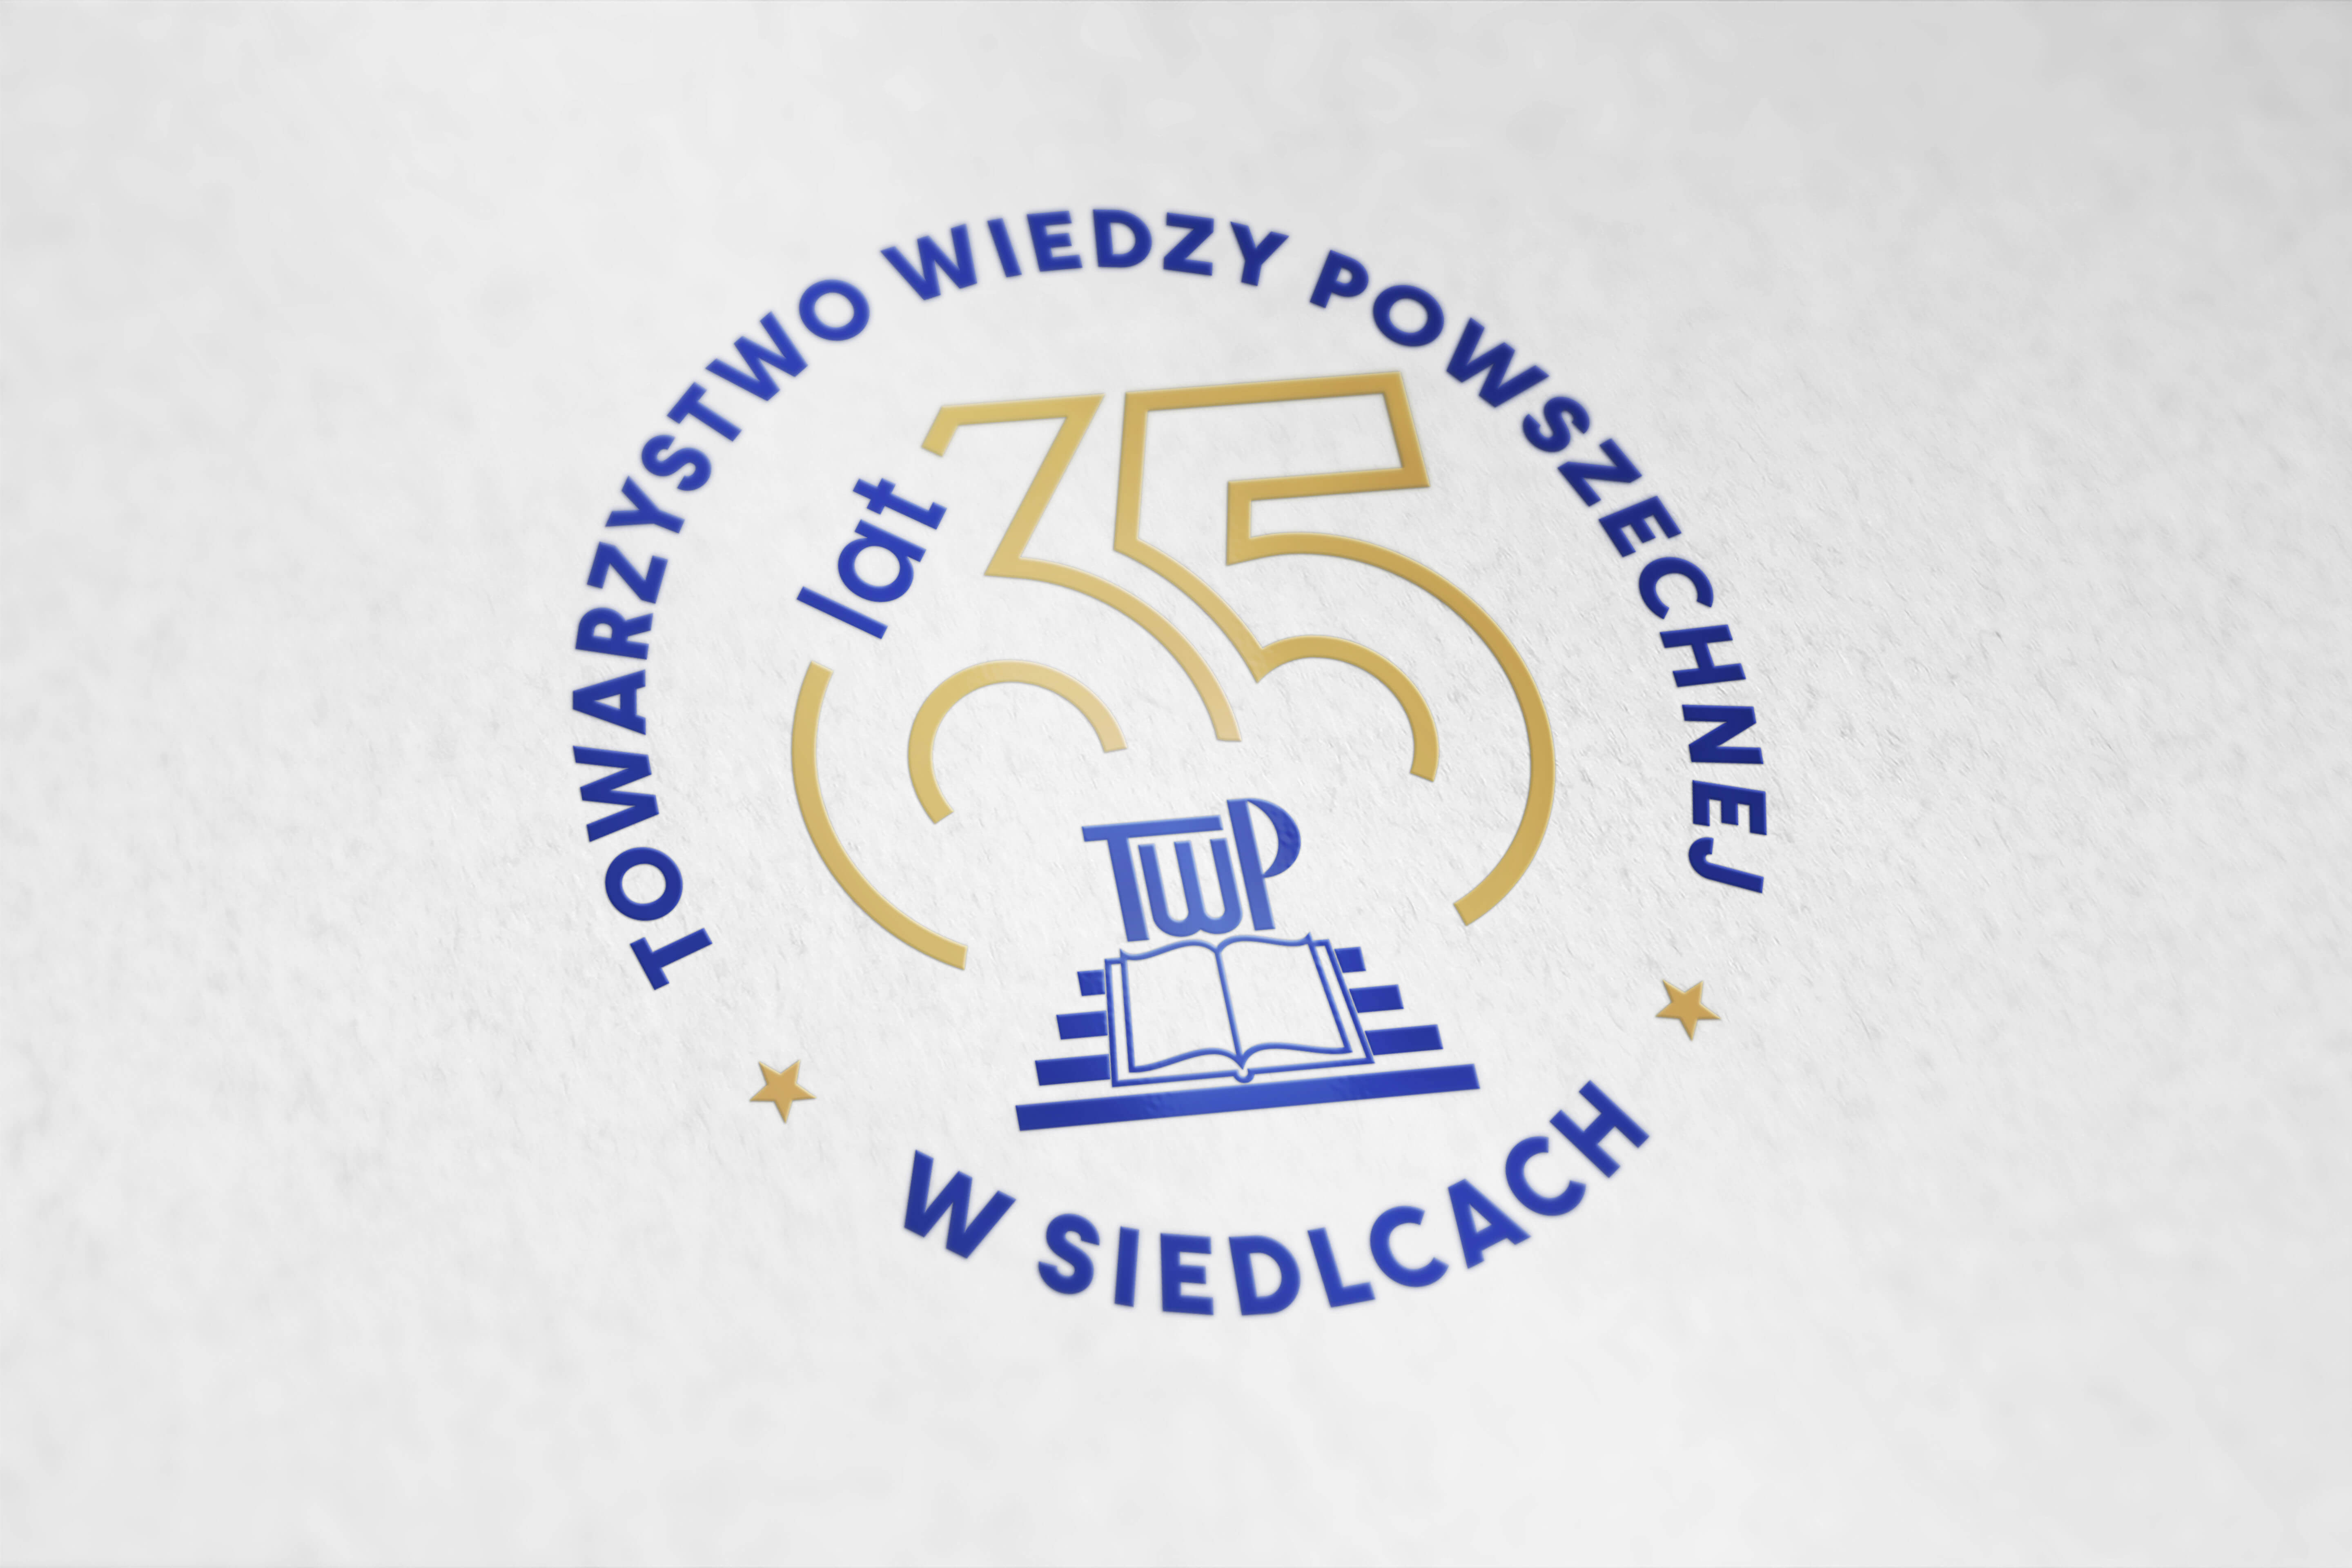 TWP, Towarzystwo Wiedzy Powszechnej w Siedlcach